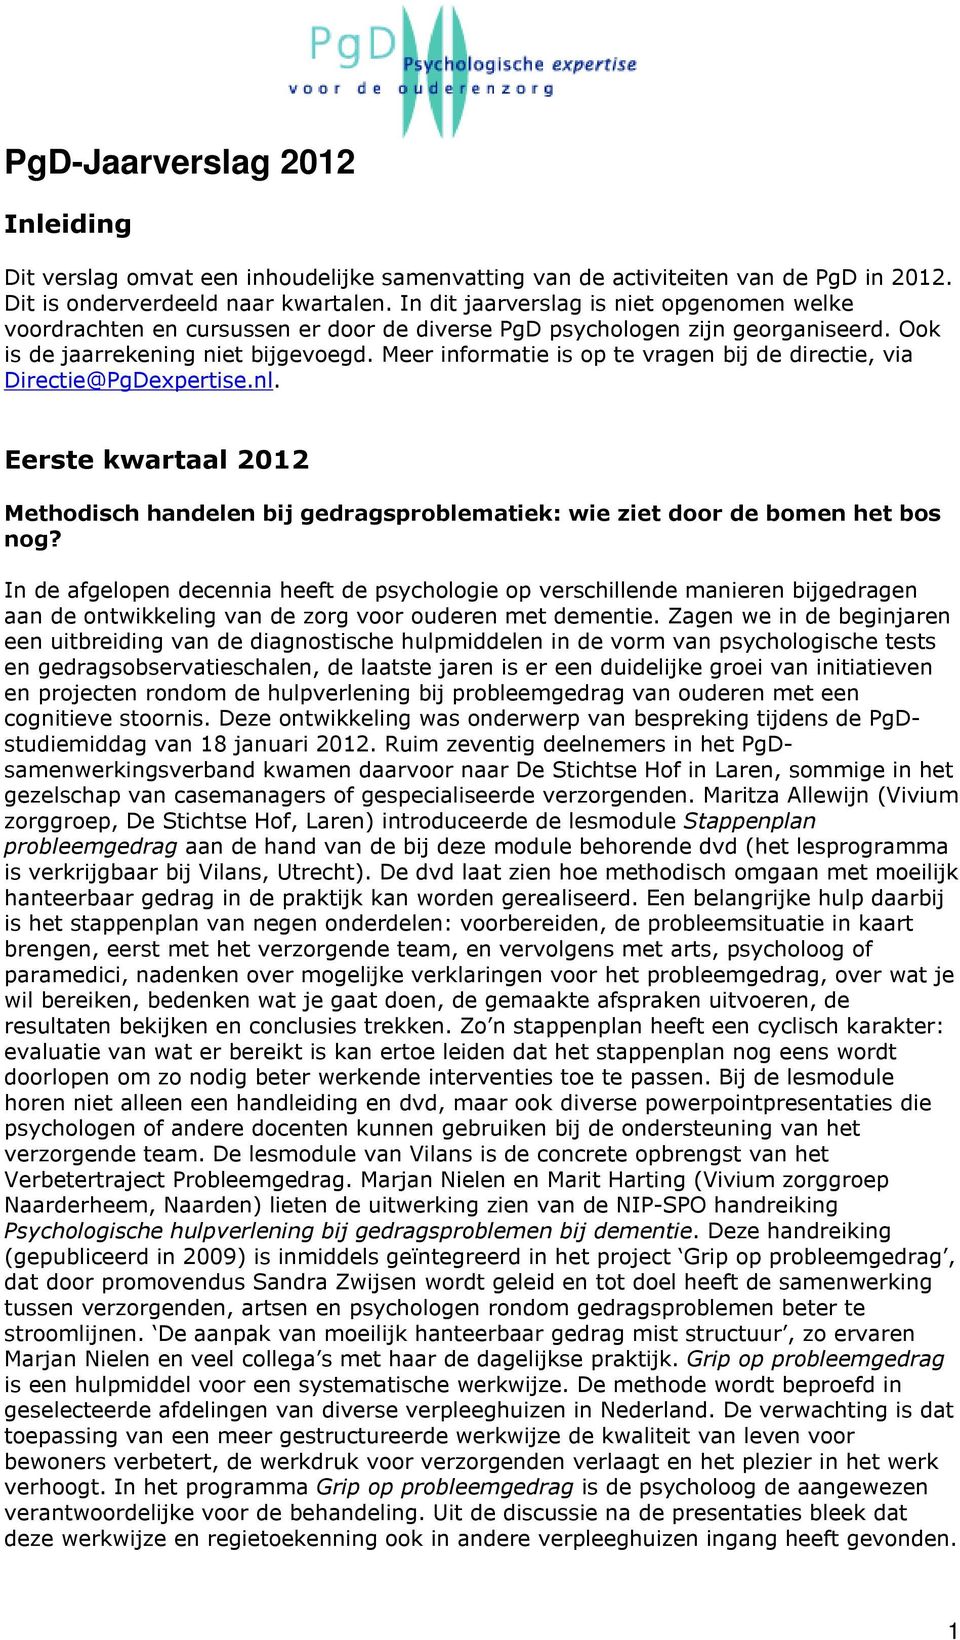 Meer informatie is op te vragen bij de directie, via Directie@PgDexpertise.nl. Eerste kwartaal 2012 Methodisch handelen bij gedragsproblematiek: wie ziet door de bomen het bos nog?